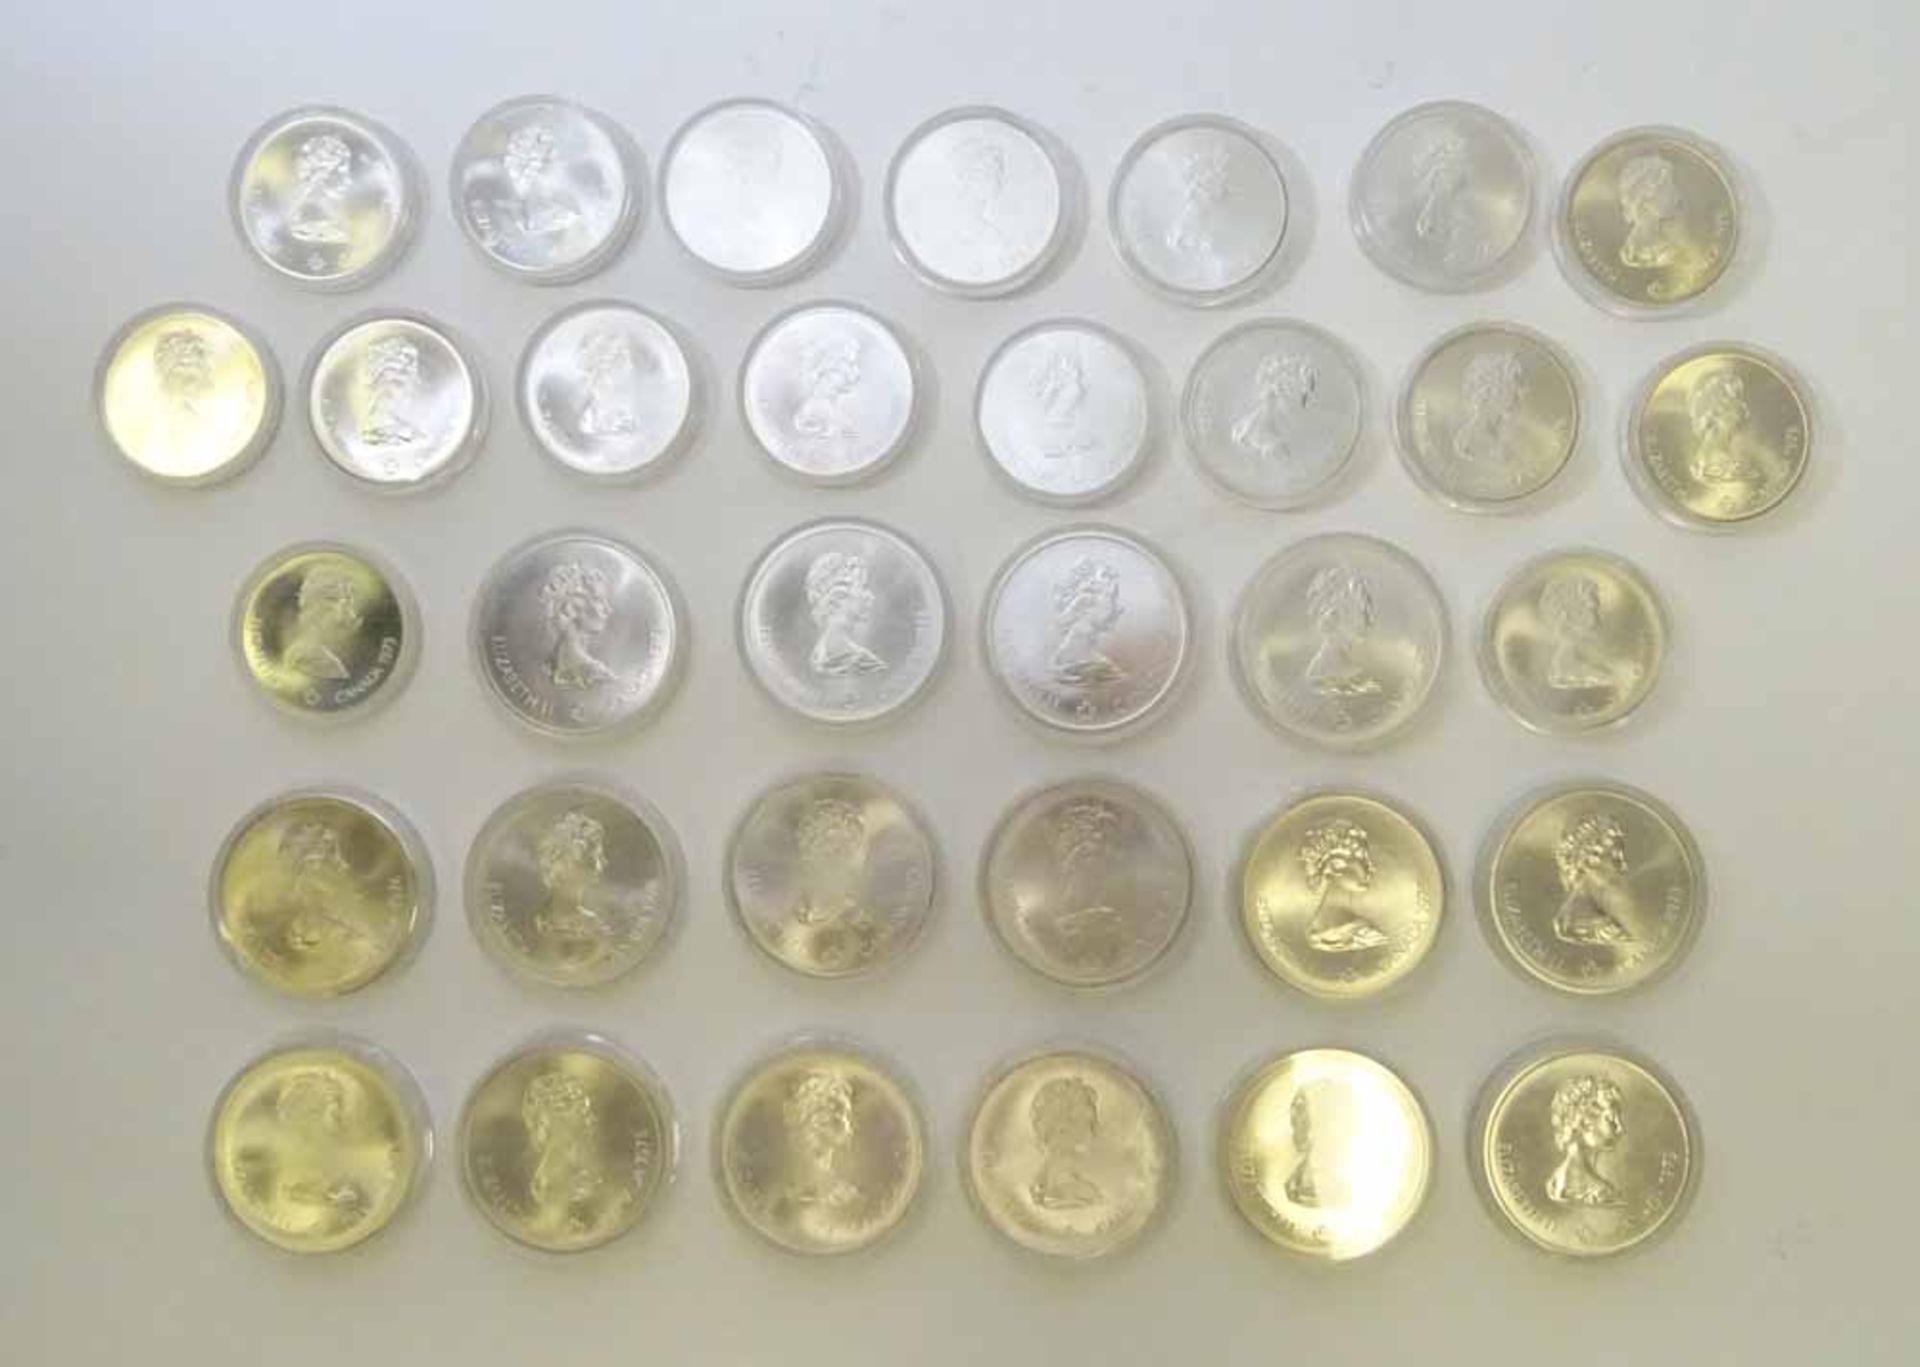 17 Silbermünzen (925), Kanada, à 5 Dollars